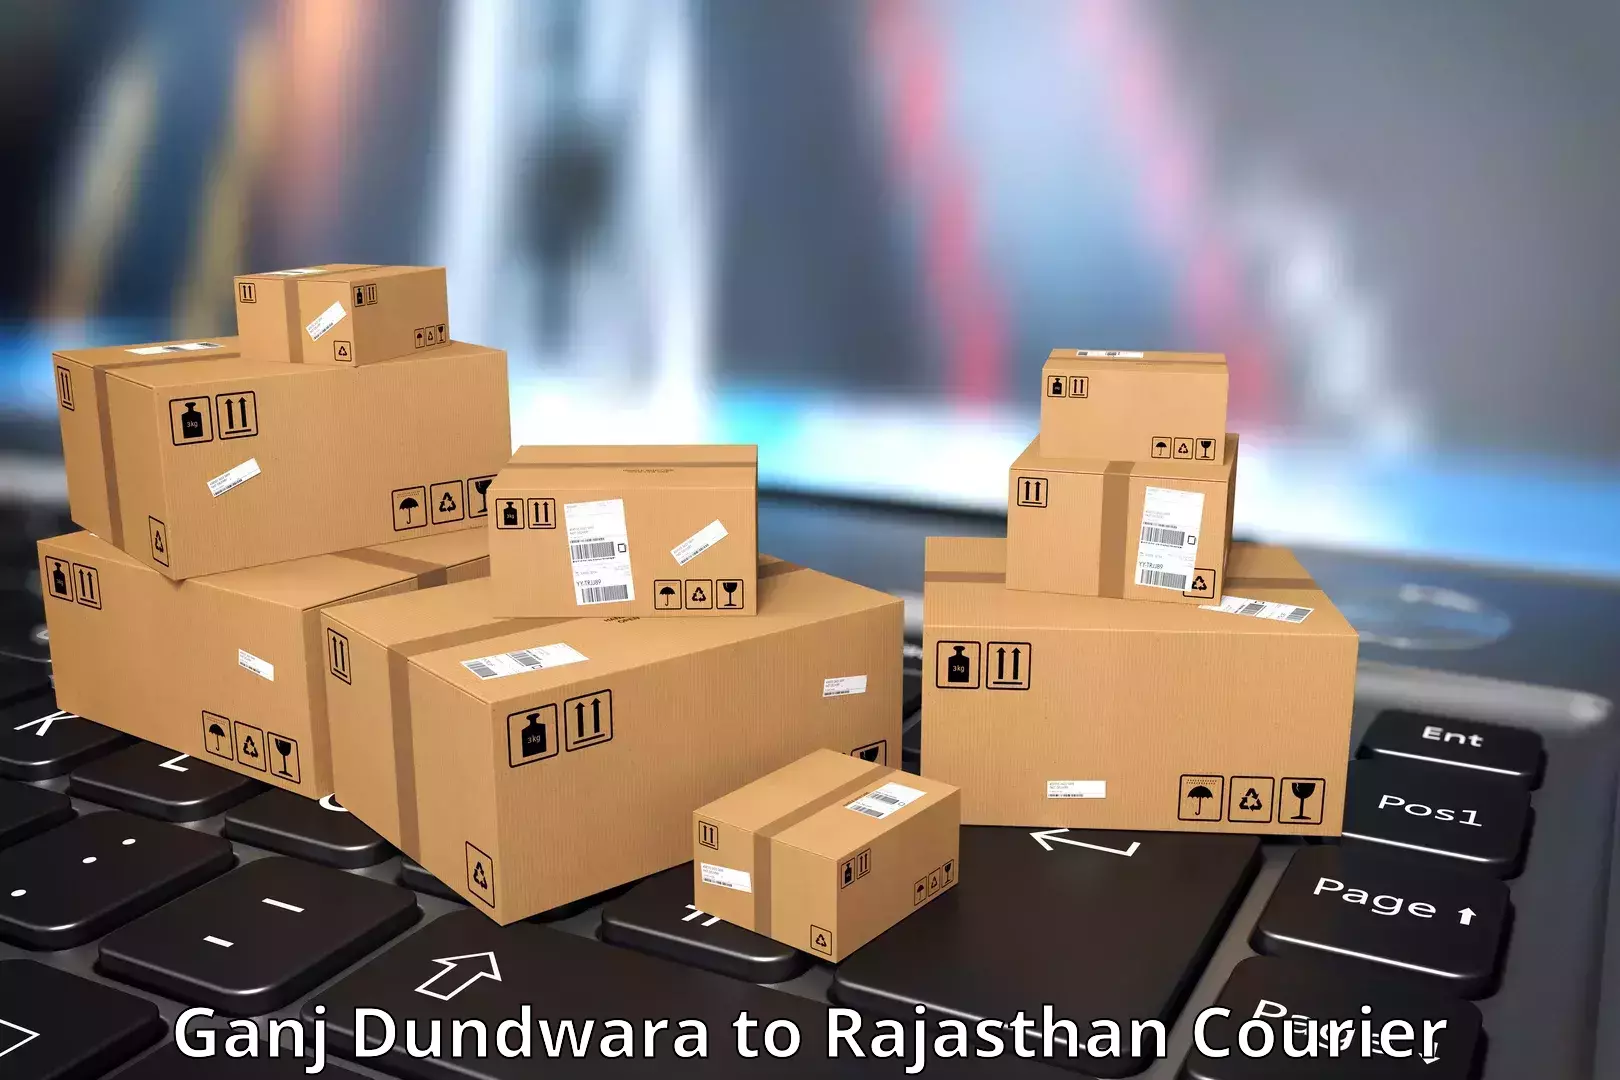 24/7 shipping services Ganj Dundwara to Rajasthan